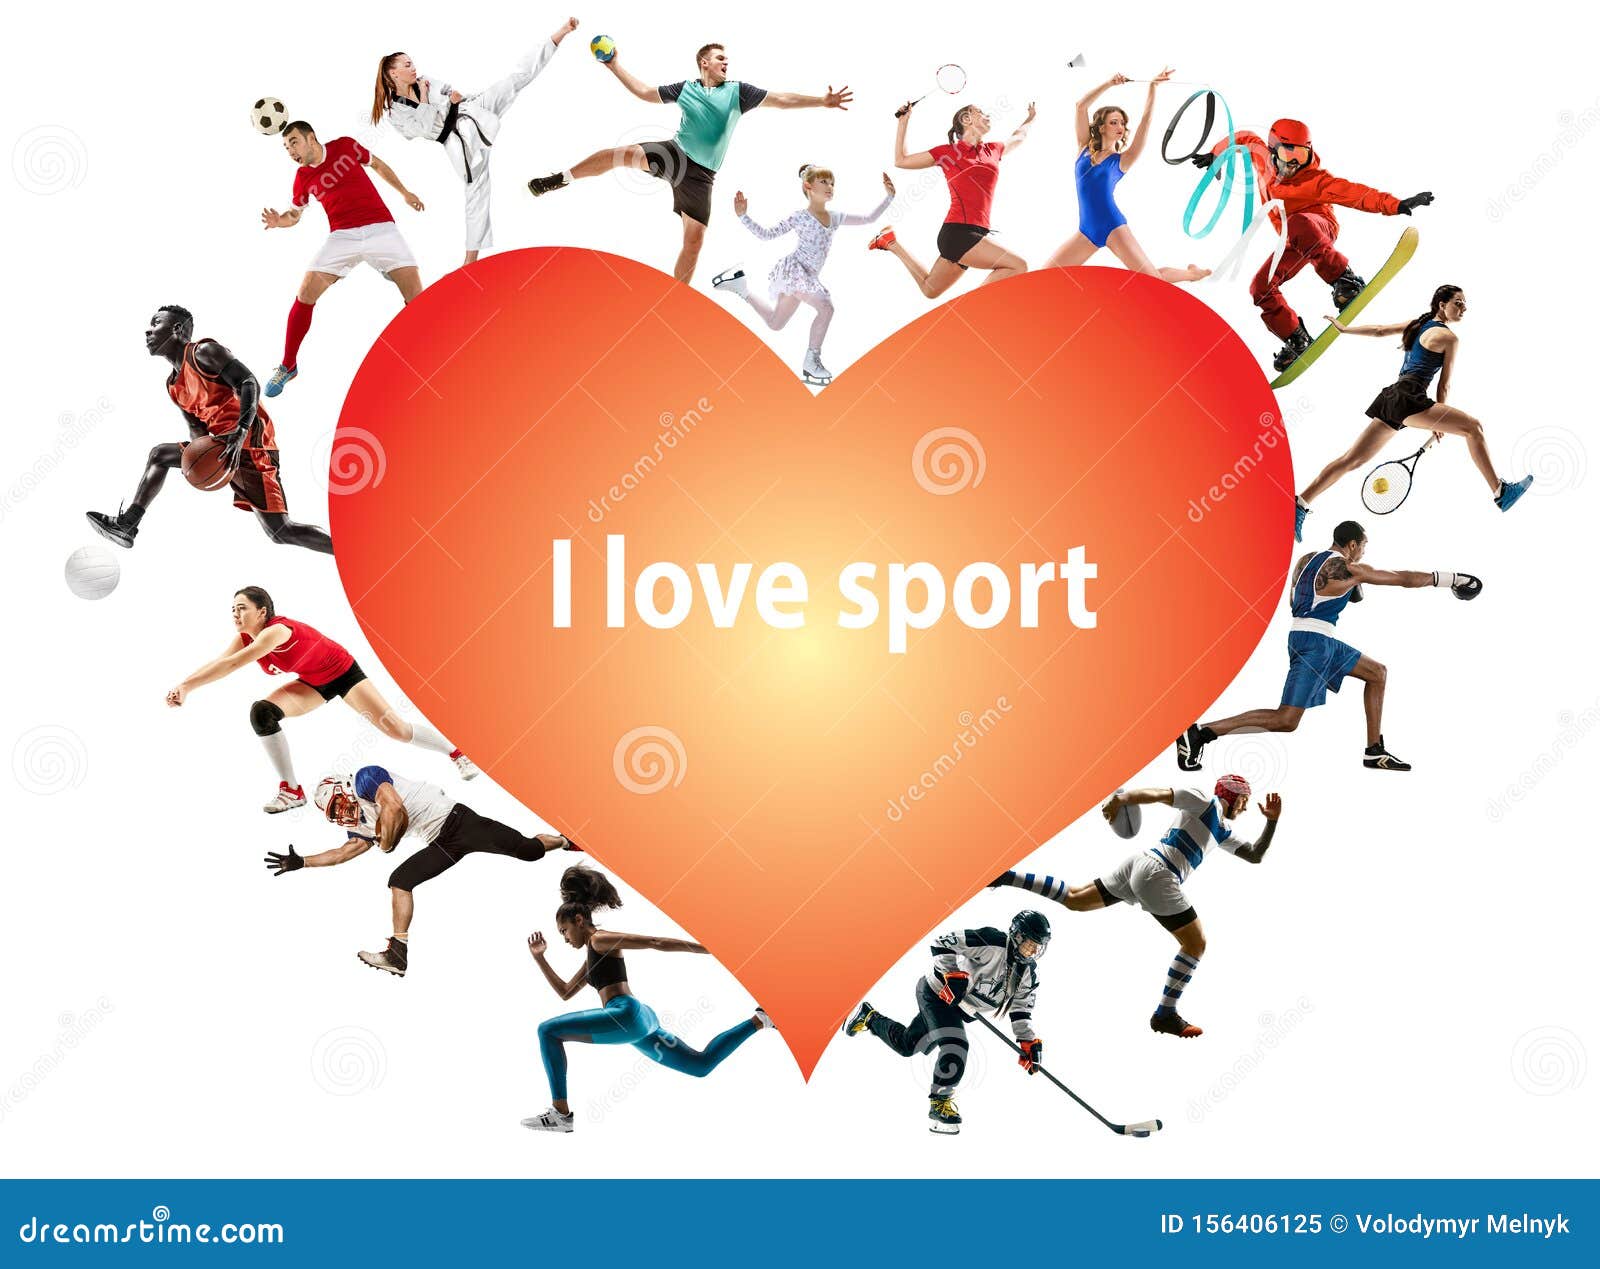 He love sport. Люблю спорт. Я люблю спорт картинки. Любимый спорт. Обожаю спорт.